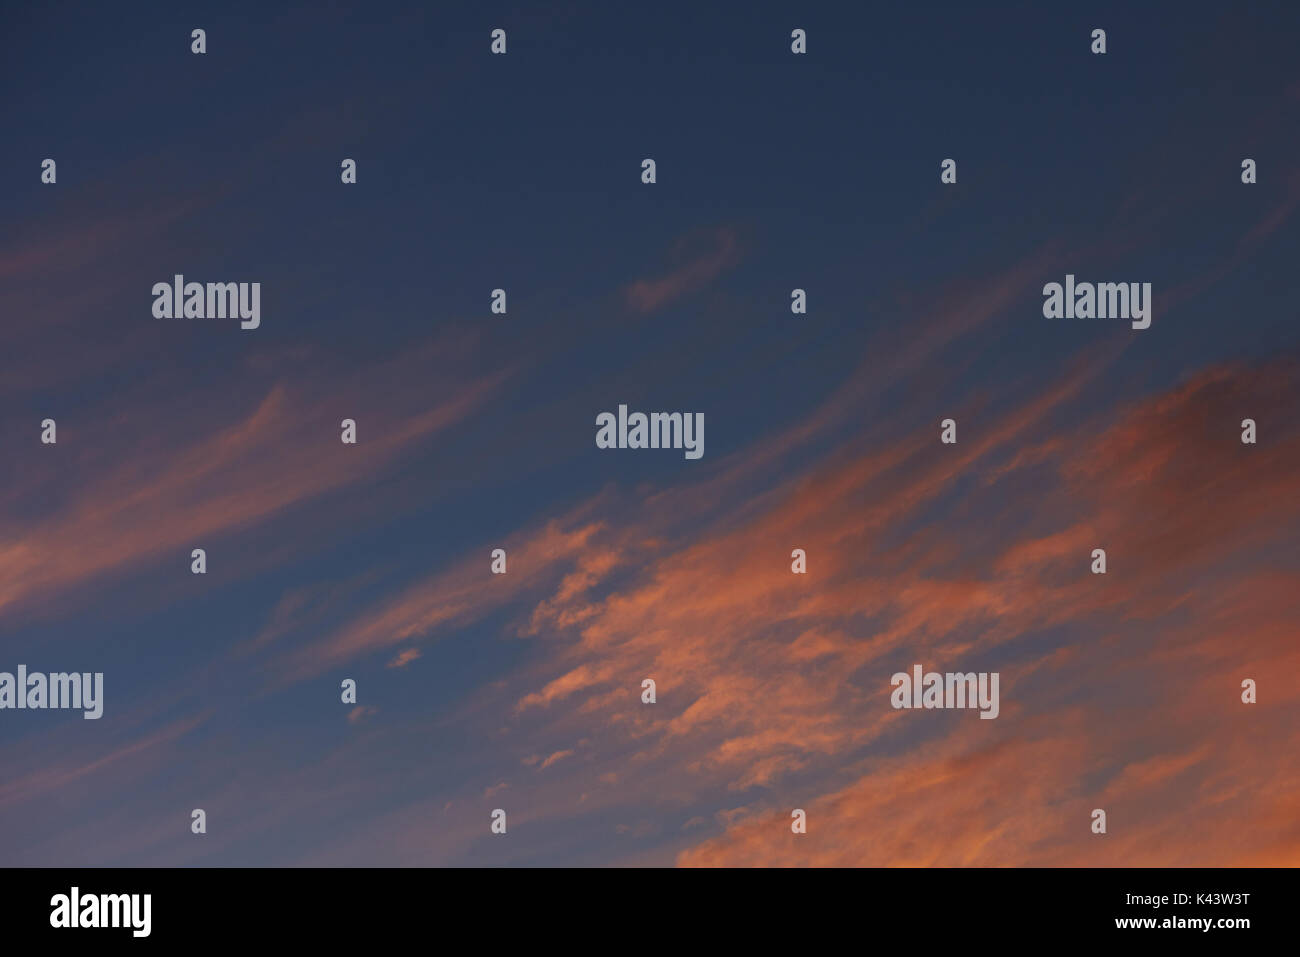 Orange sunset clouds on blue sky. Dramatic dusk sunset sky background Stock Photo